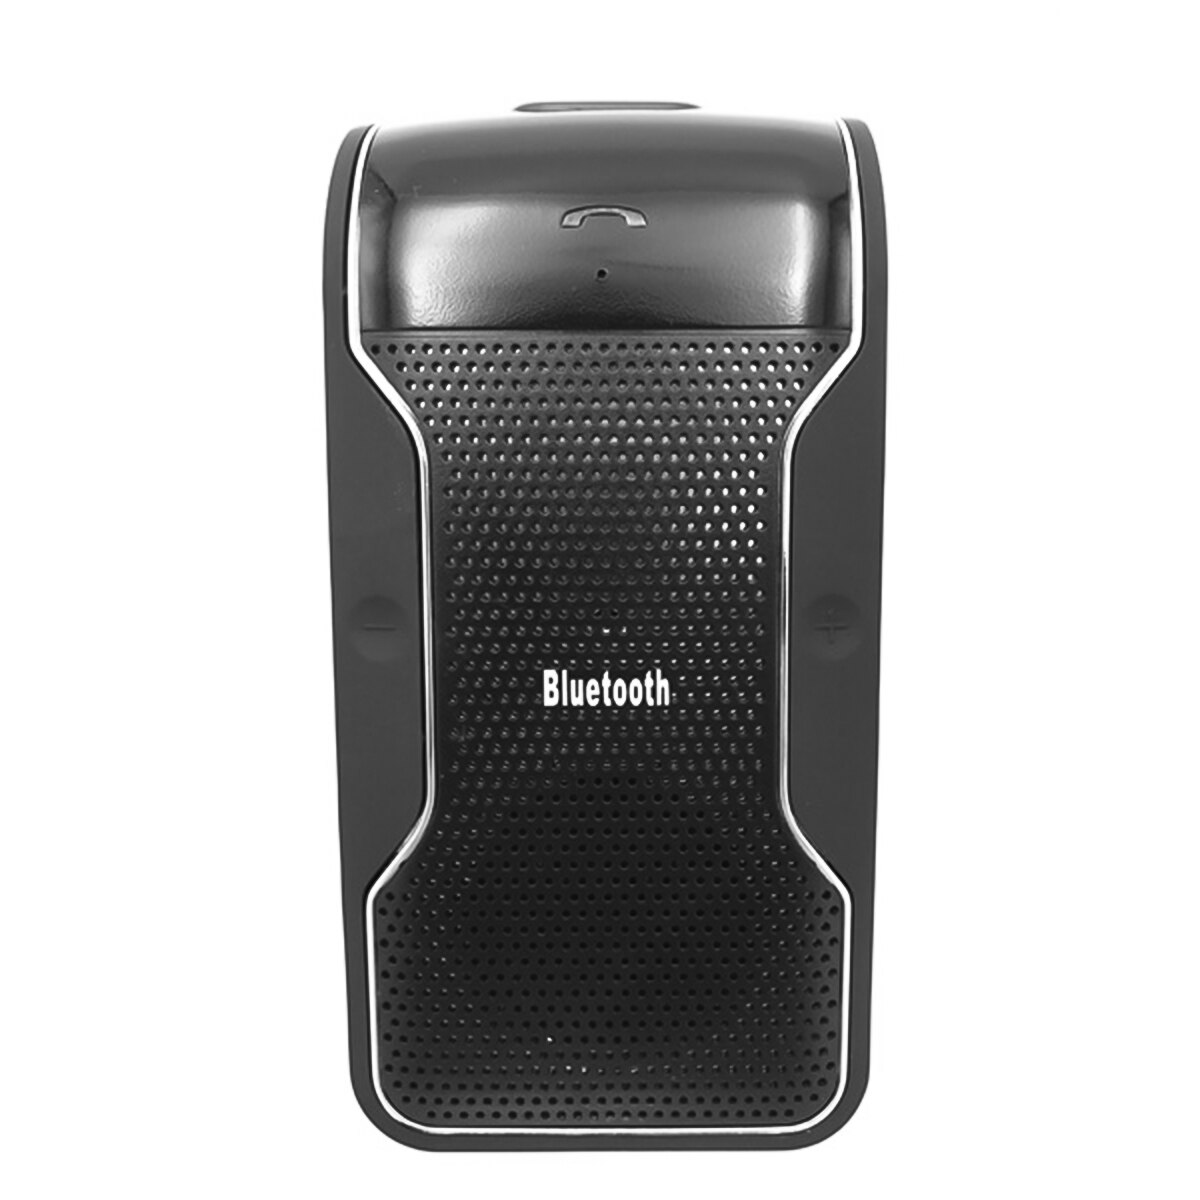 Handsfree Bluetooth Carkit zonneklep Speaker Auto Multipoint Draadloze Speakerphone voor handsfree bellen thuis kantoor